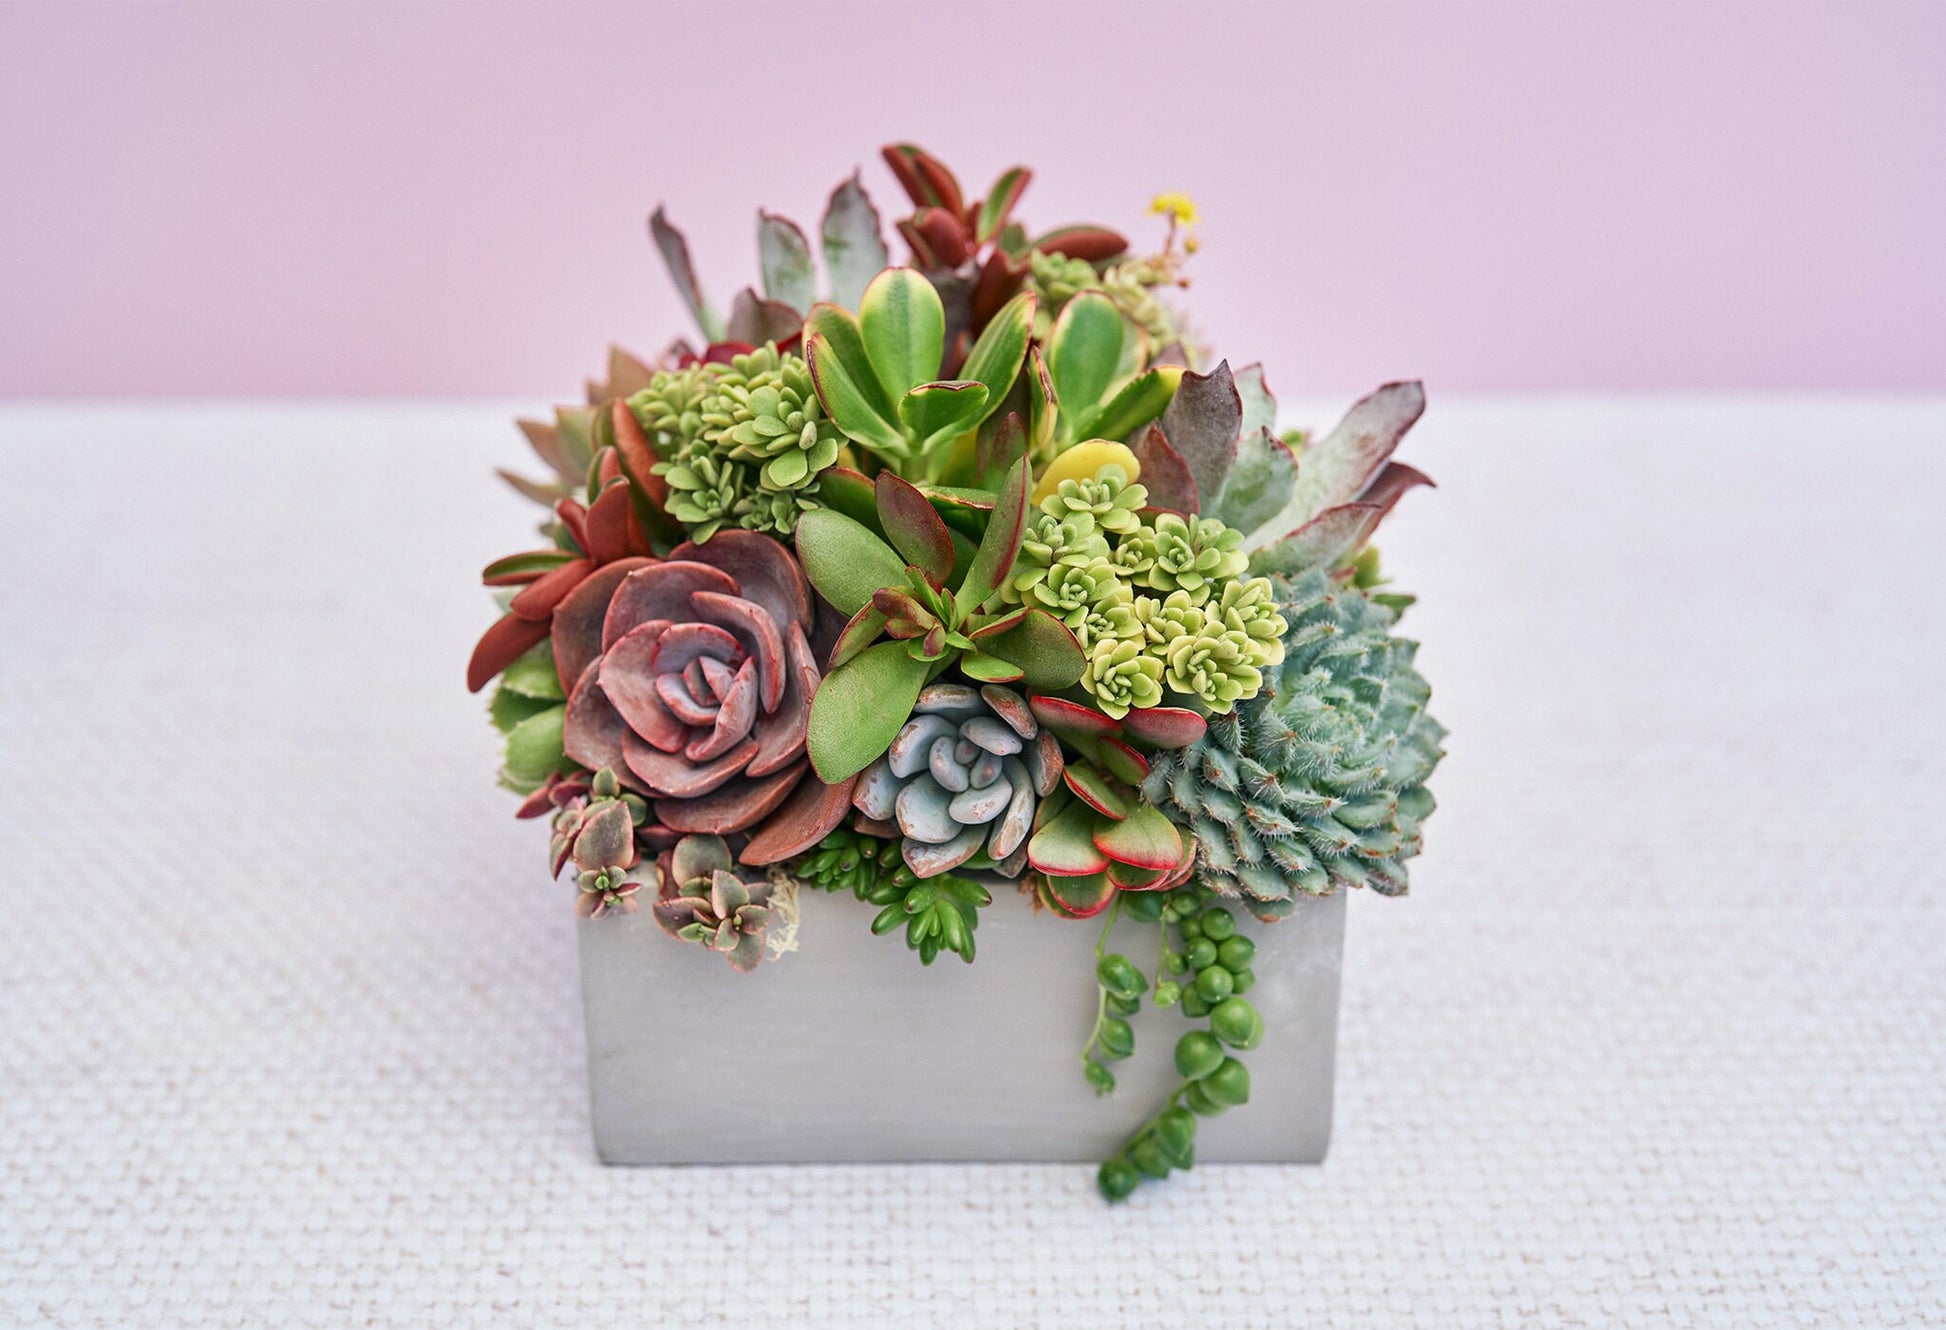 Concrete Square Succulent Arrangement Gift | Alt Floral Wedding Event Centerpiece | Mother's Day Gift